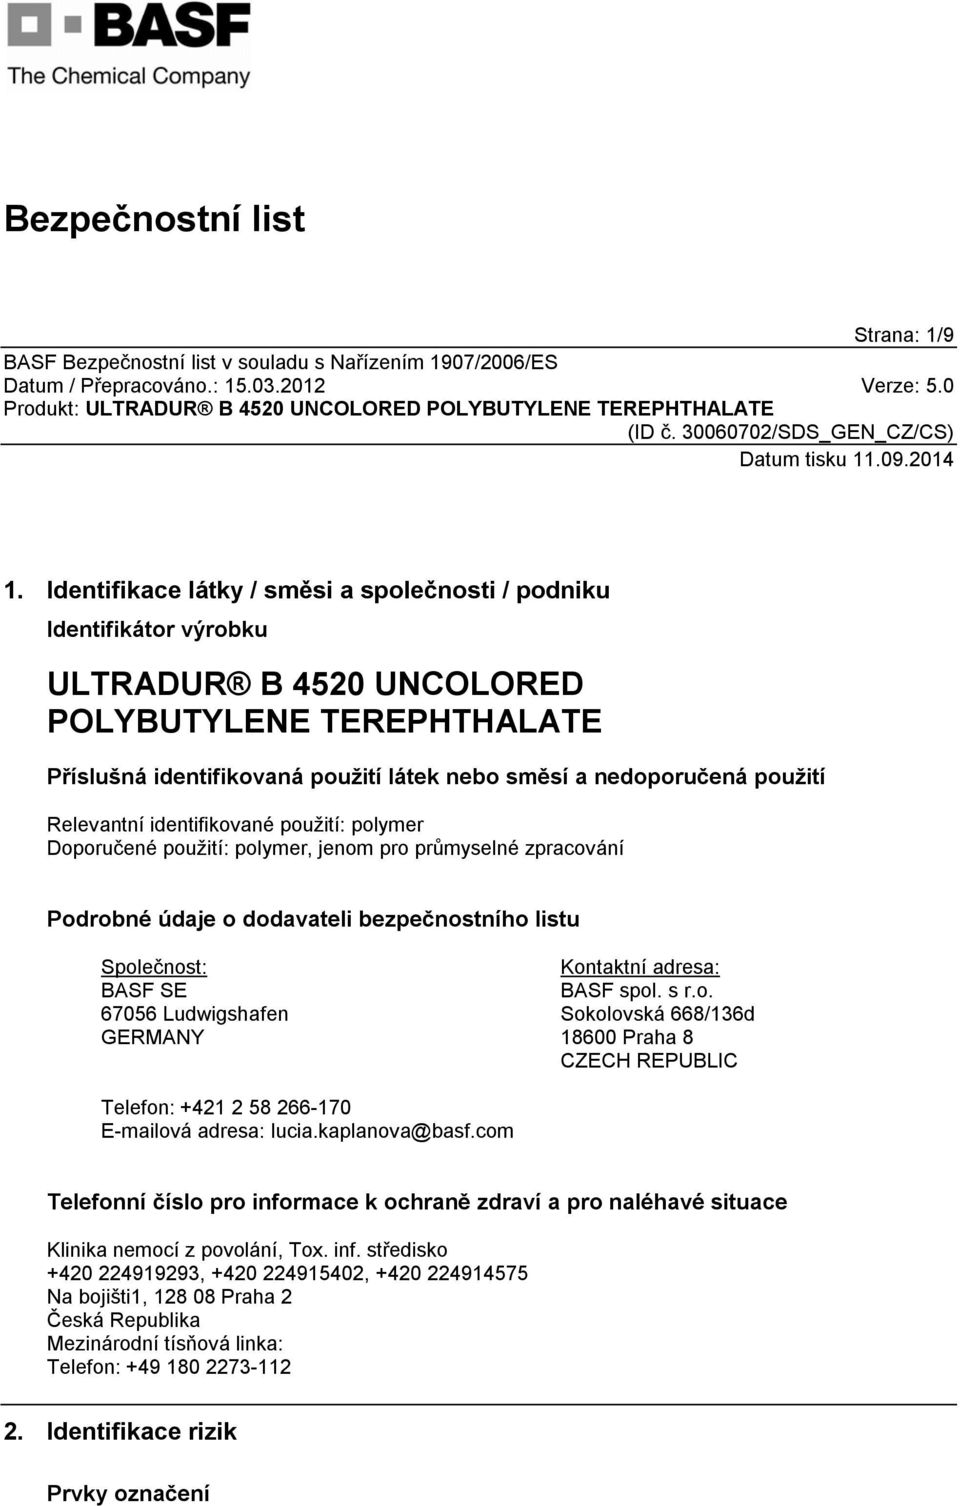 Relevantní identifikované použití: polymer Doporučené použití: polymer, jenom pro průmyselné zpracování Podrobné údaje o dodavateli bezpečnostního listu Společnost: BASF SE 67056 Ludwigshafen GERMANY